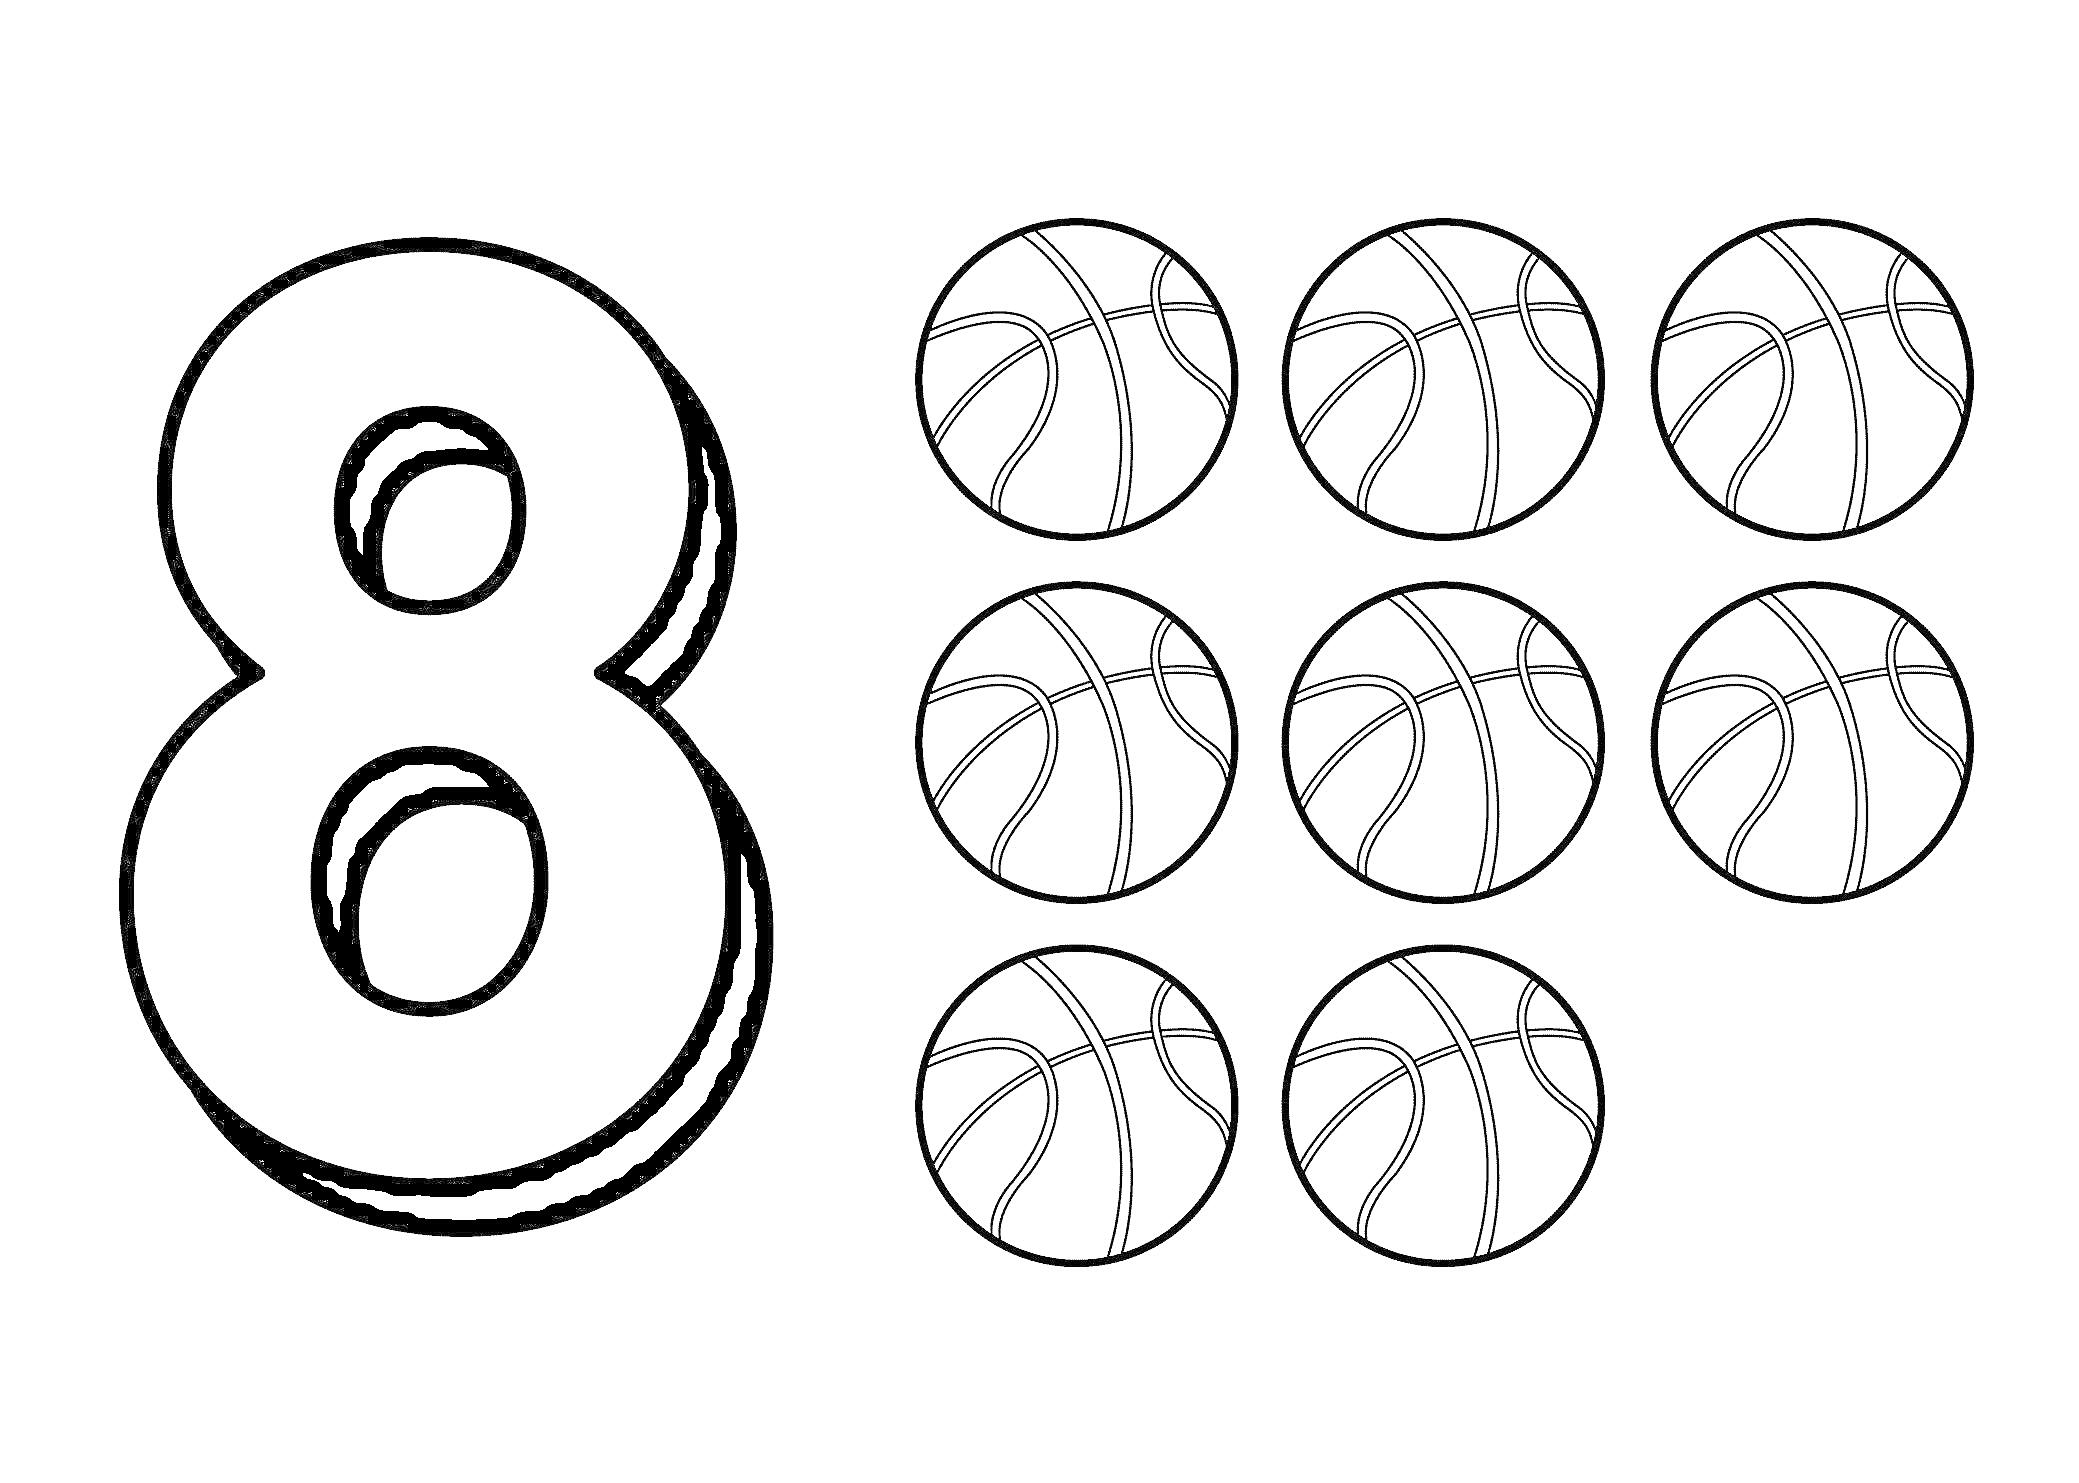 Цифра 8 и восемь баскетбольных мячей